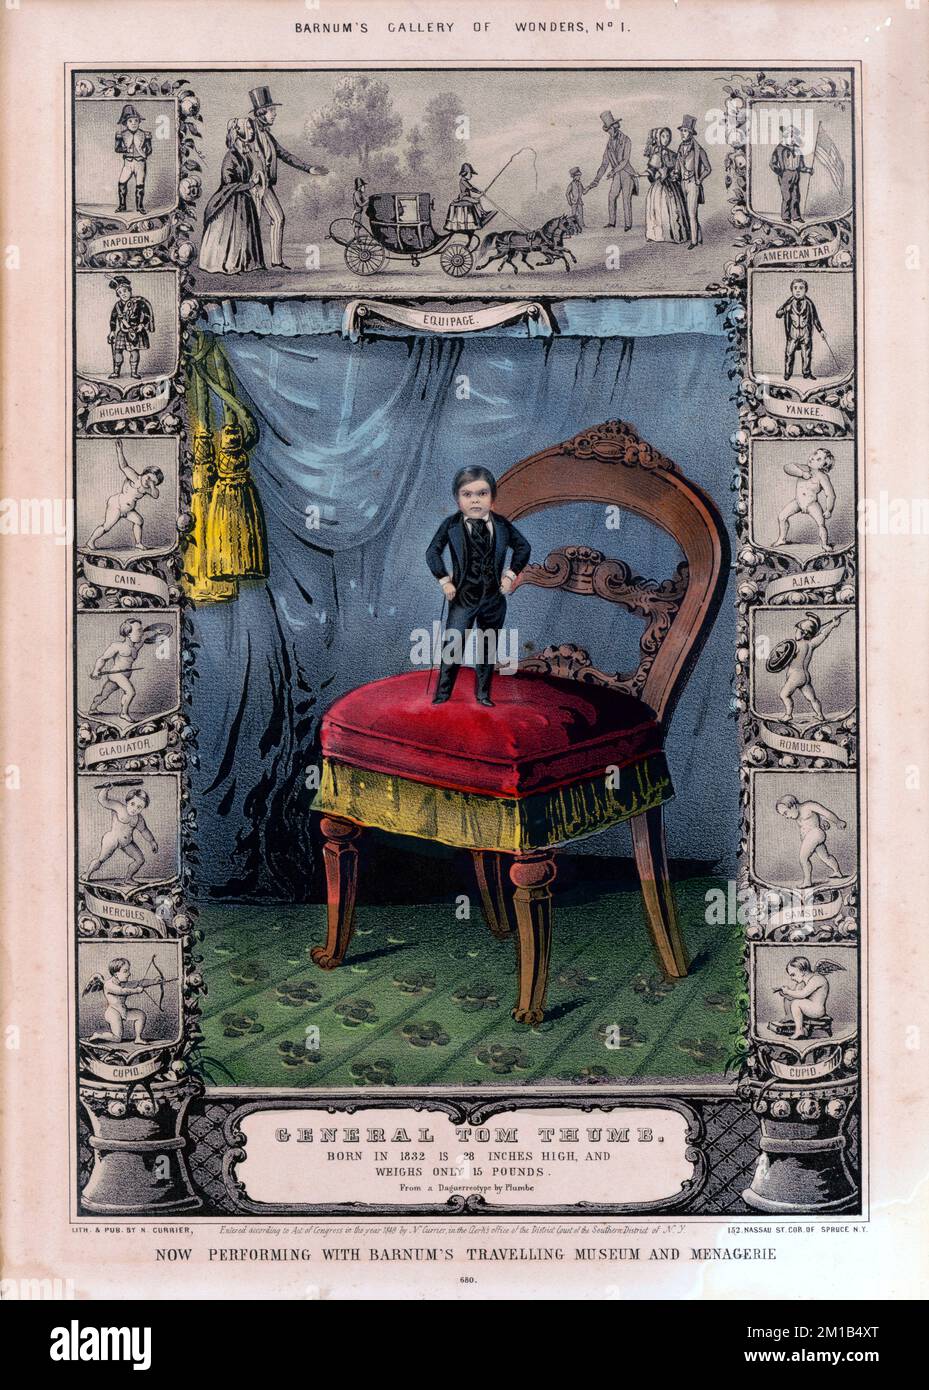 Illustration von General Tom Thumb, Charles Sherwood Stratton (1838-1883), „General Tom Thumb“, amerikanischer Zwerg und Künstler unter dem Zirkuspionier P. T. Barnum. Stockfoto